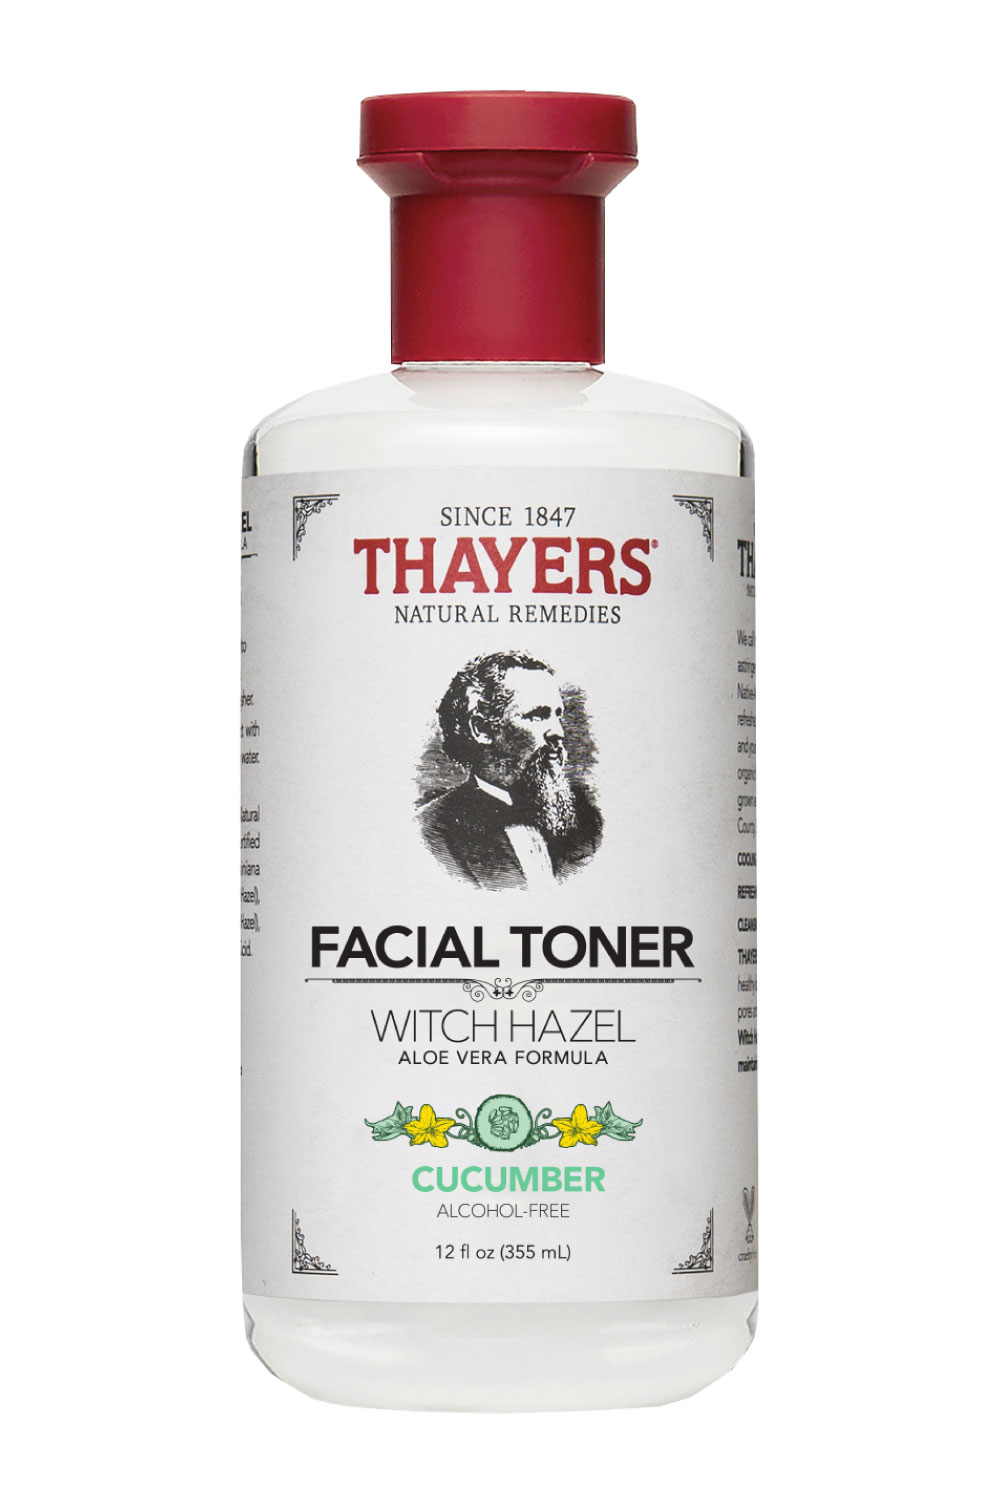 Thayers Cucumber Facial Toner